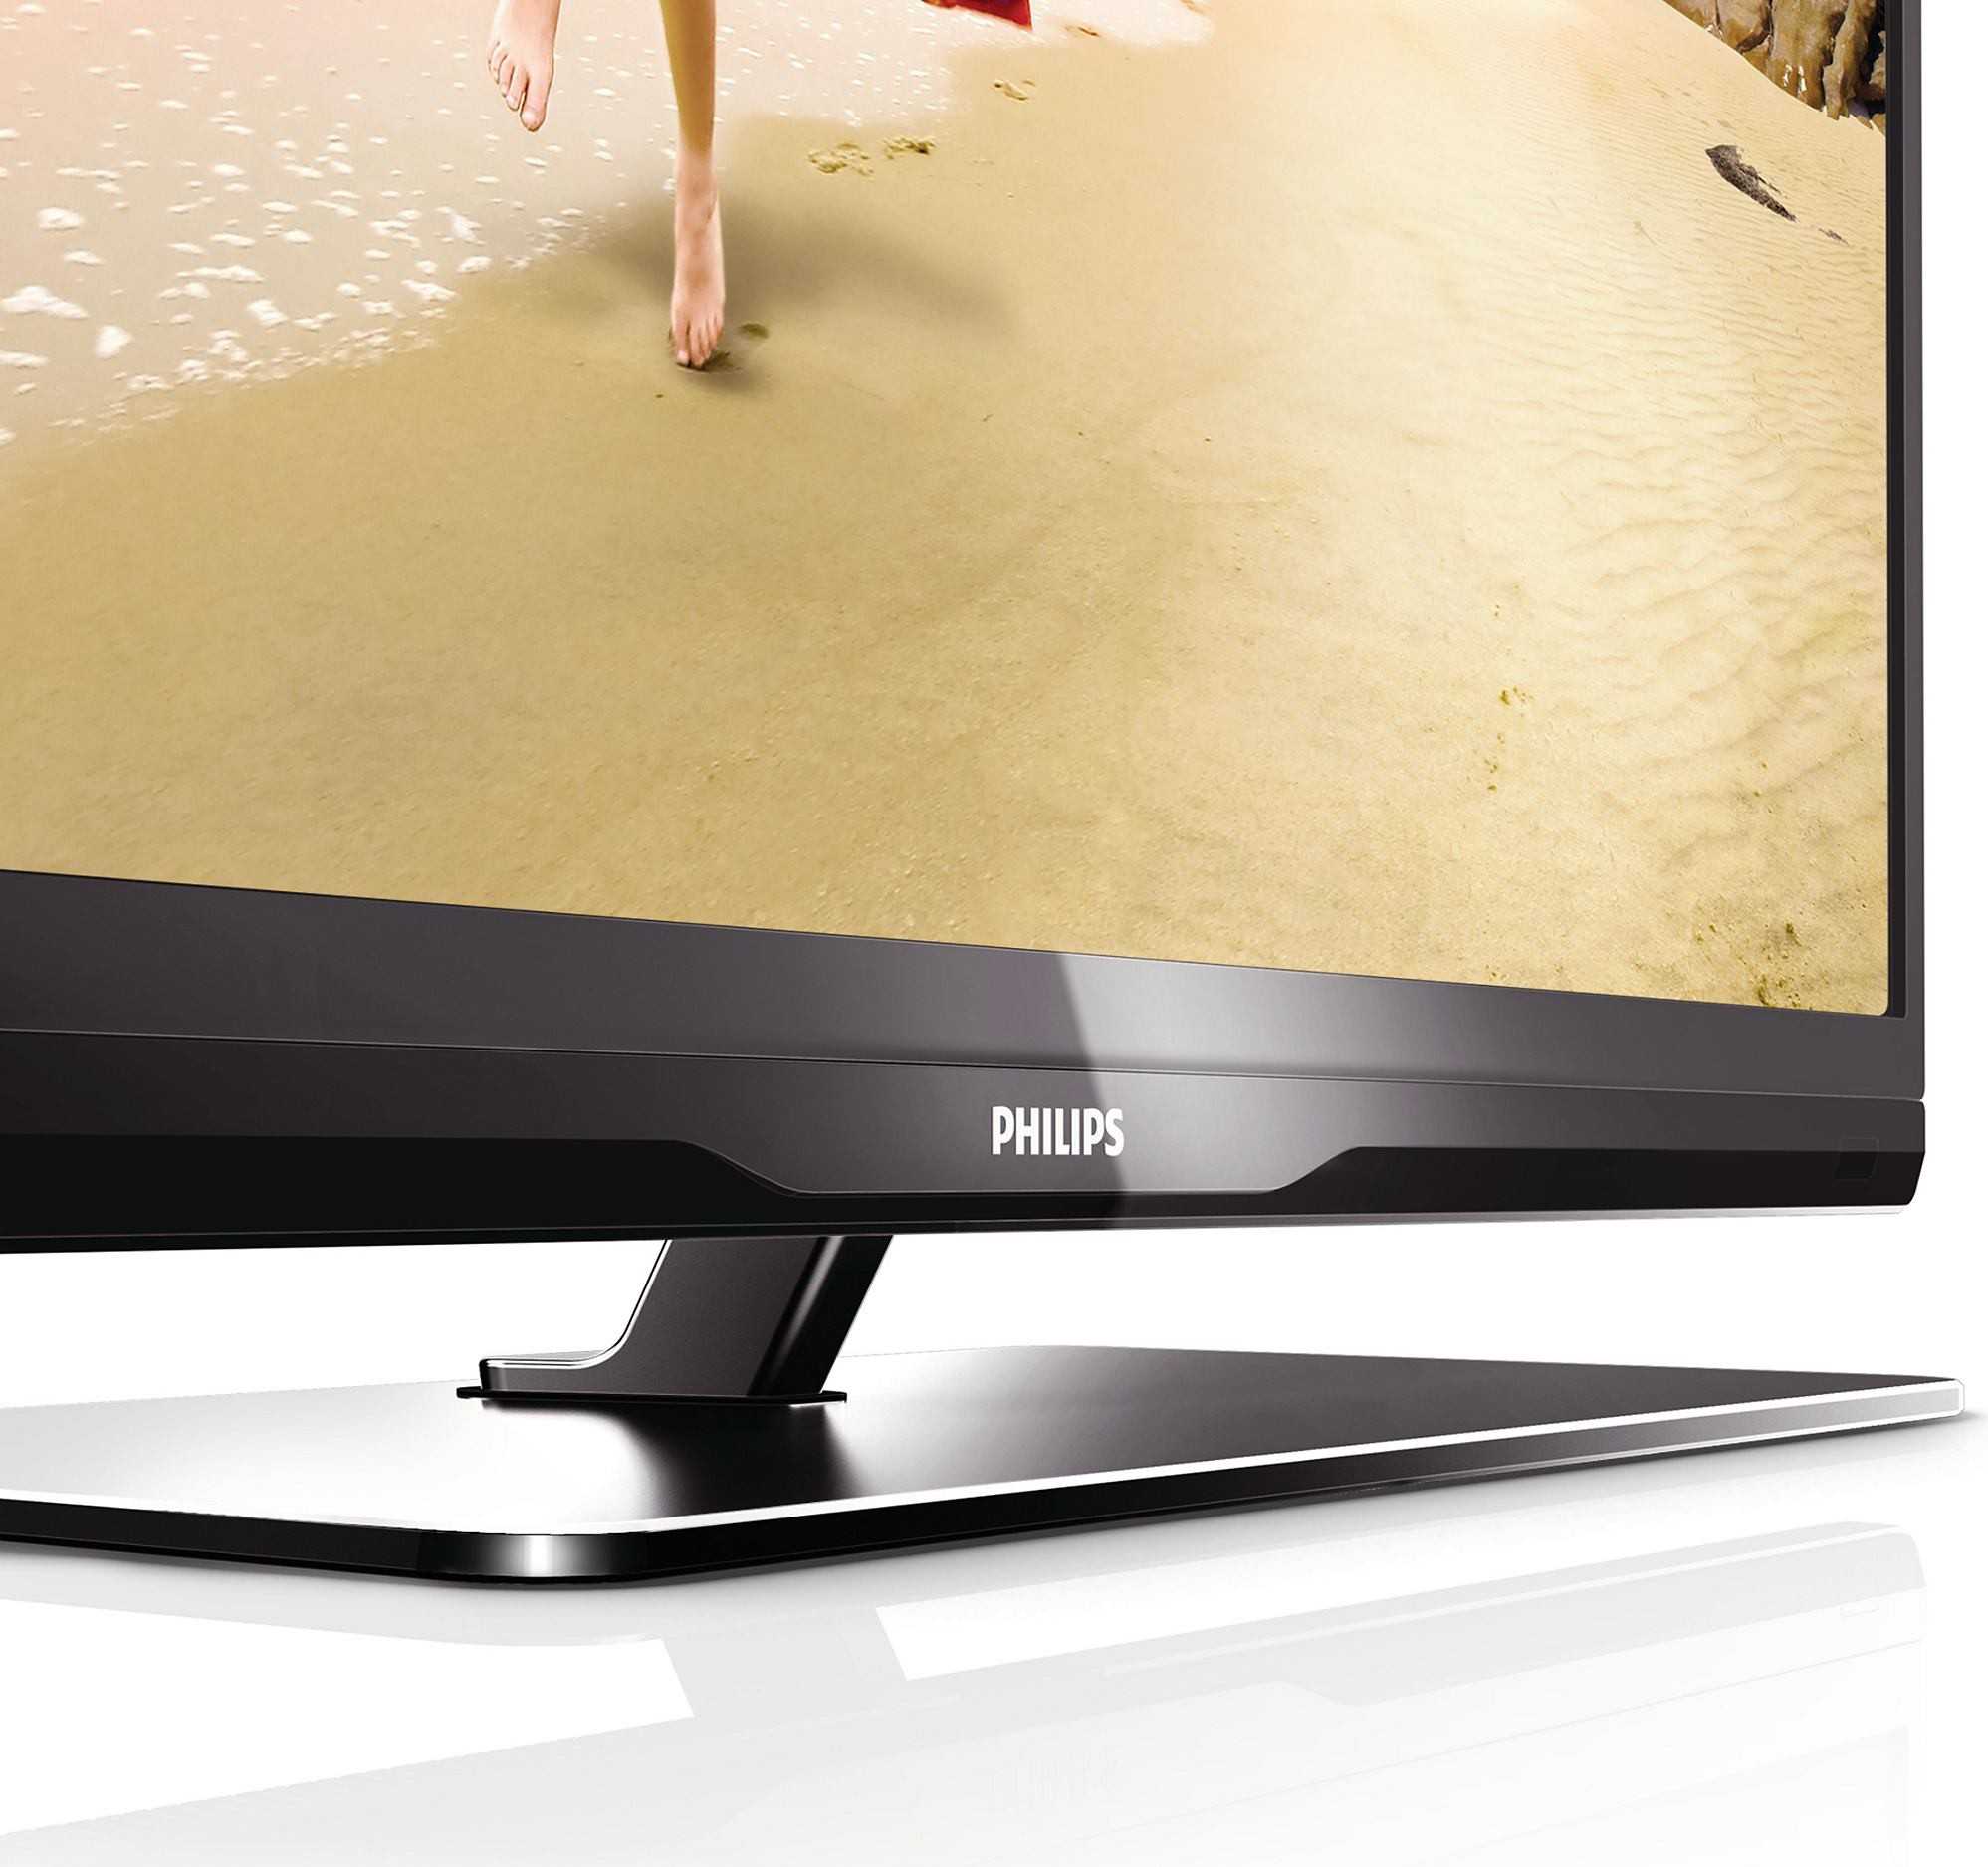 Philips 32pfl3807t - купить , скидки, цена, отзывы, обзор, характеристики - телевизоры